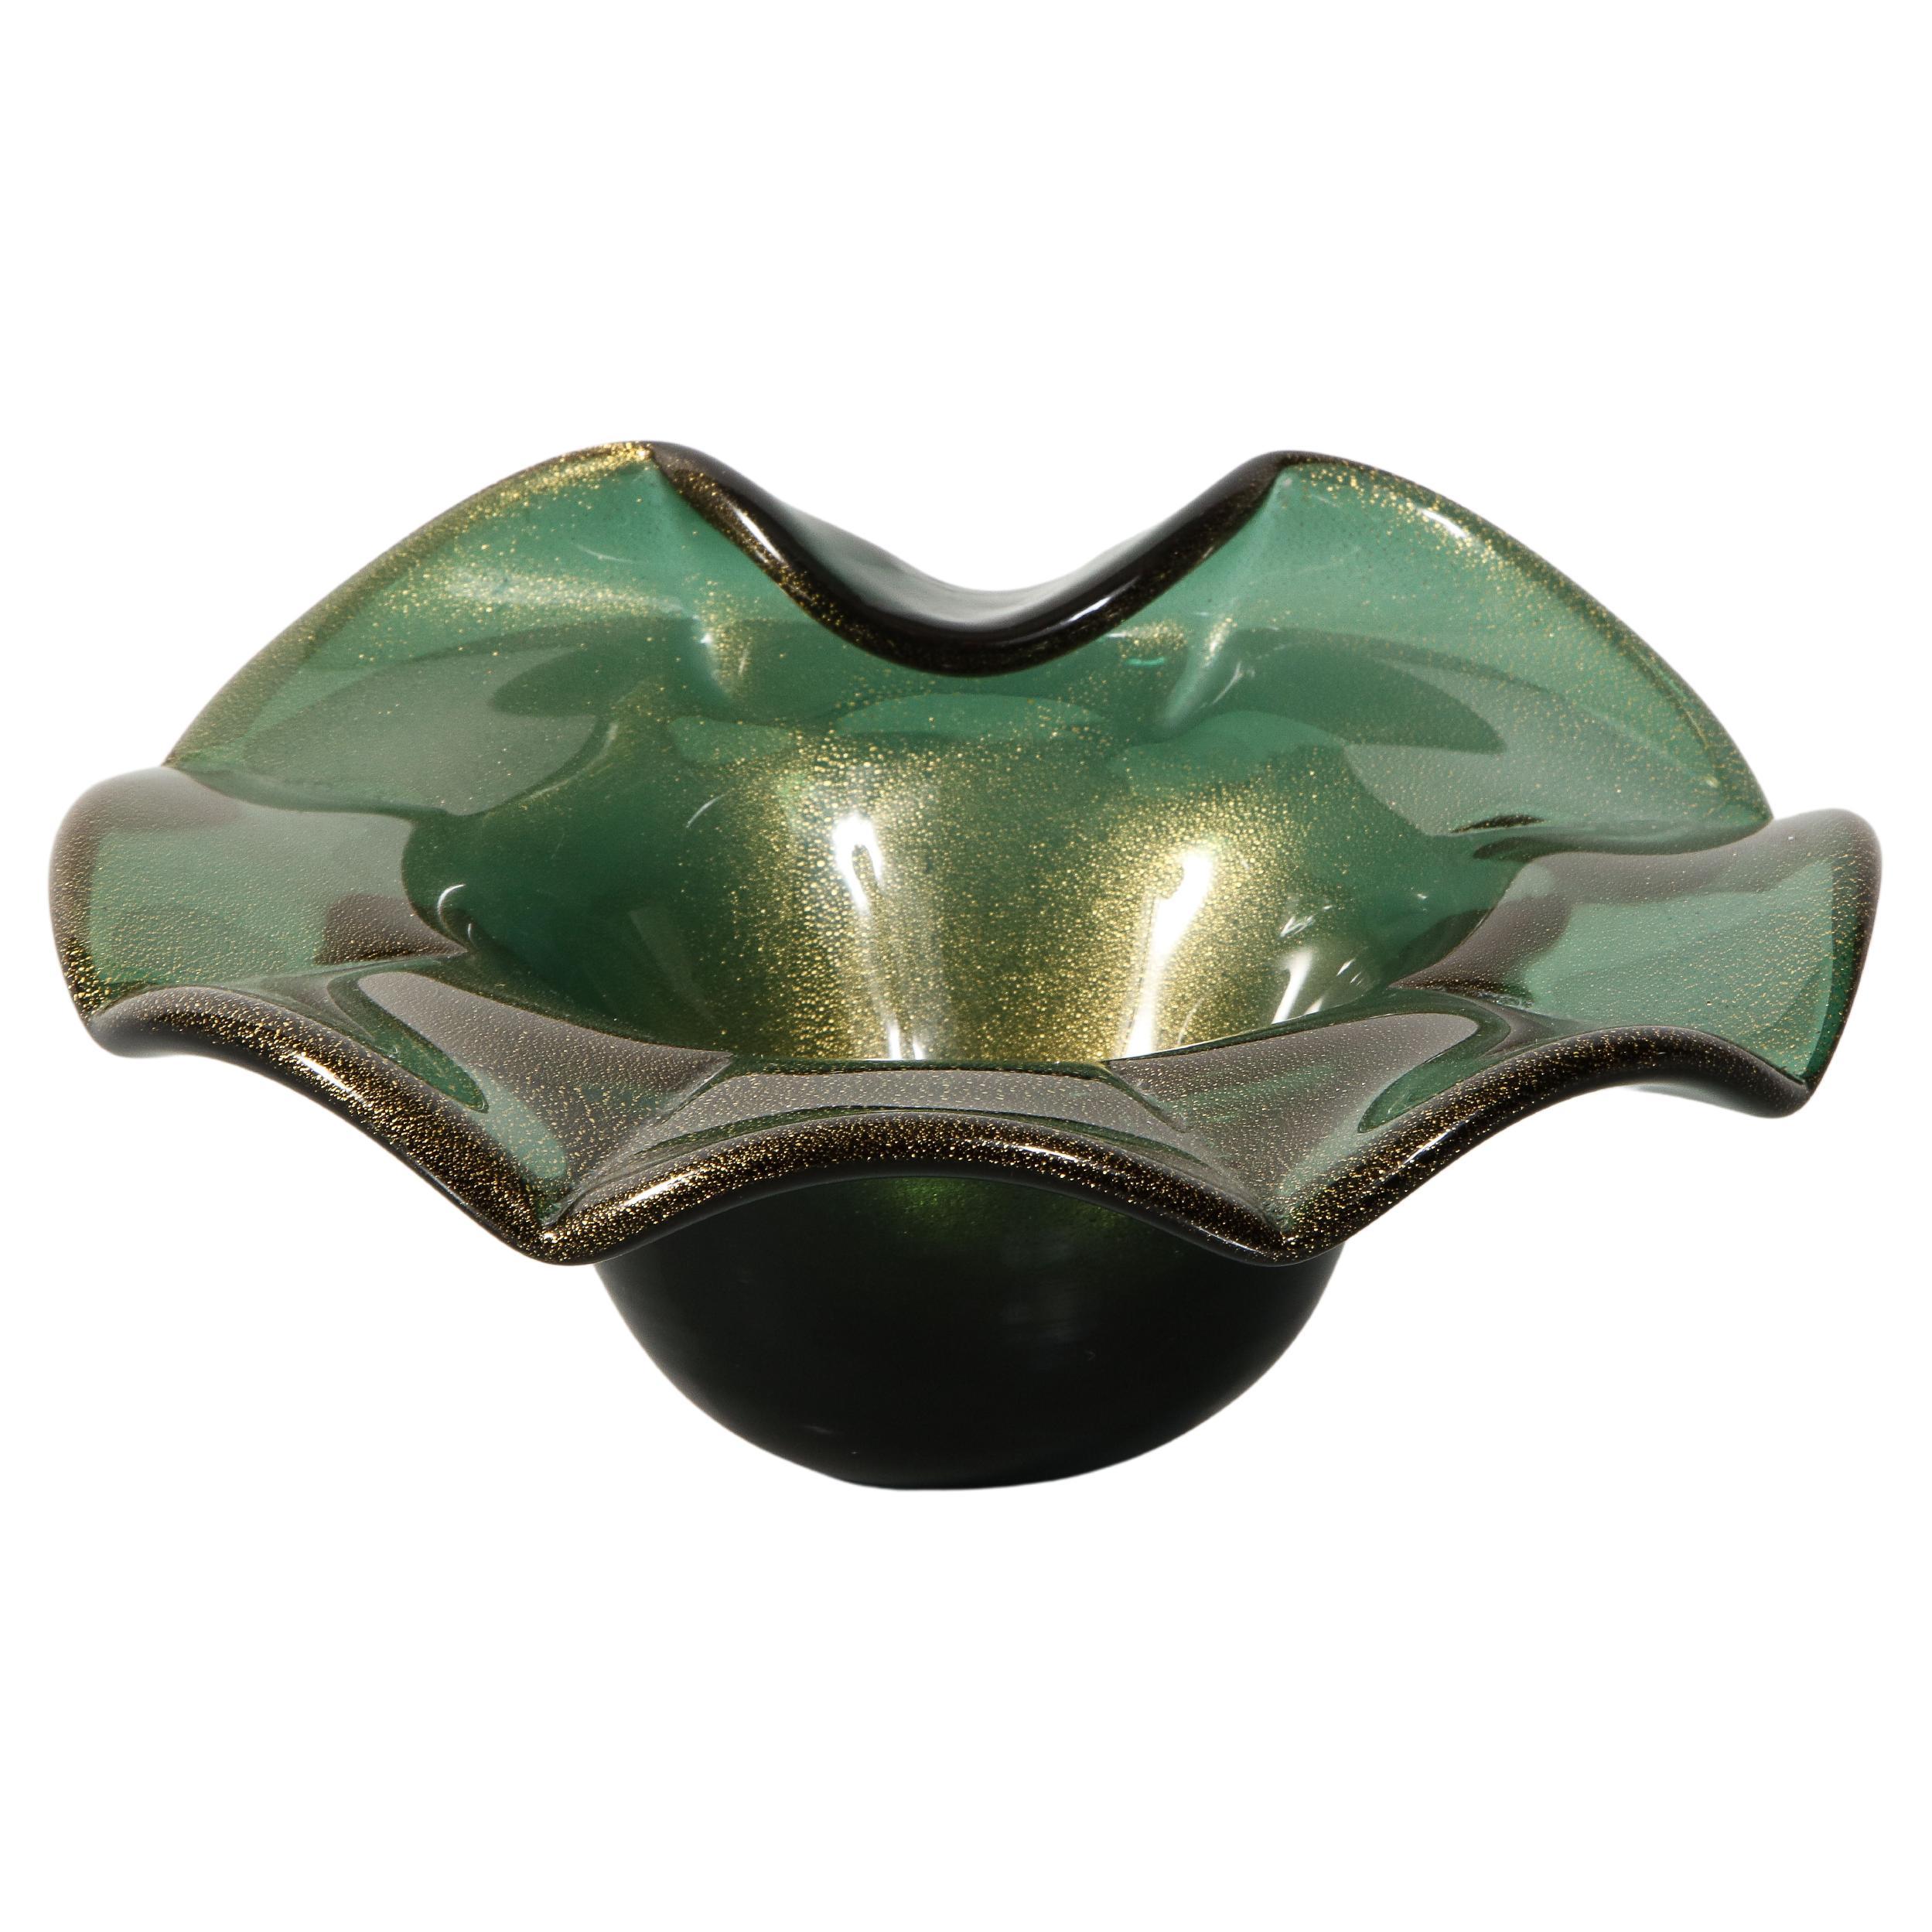 Alberto Donà Murano Green Bullicante and Aventurina Glass Dish 1970's #1